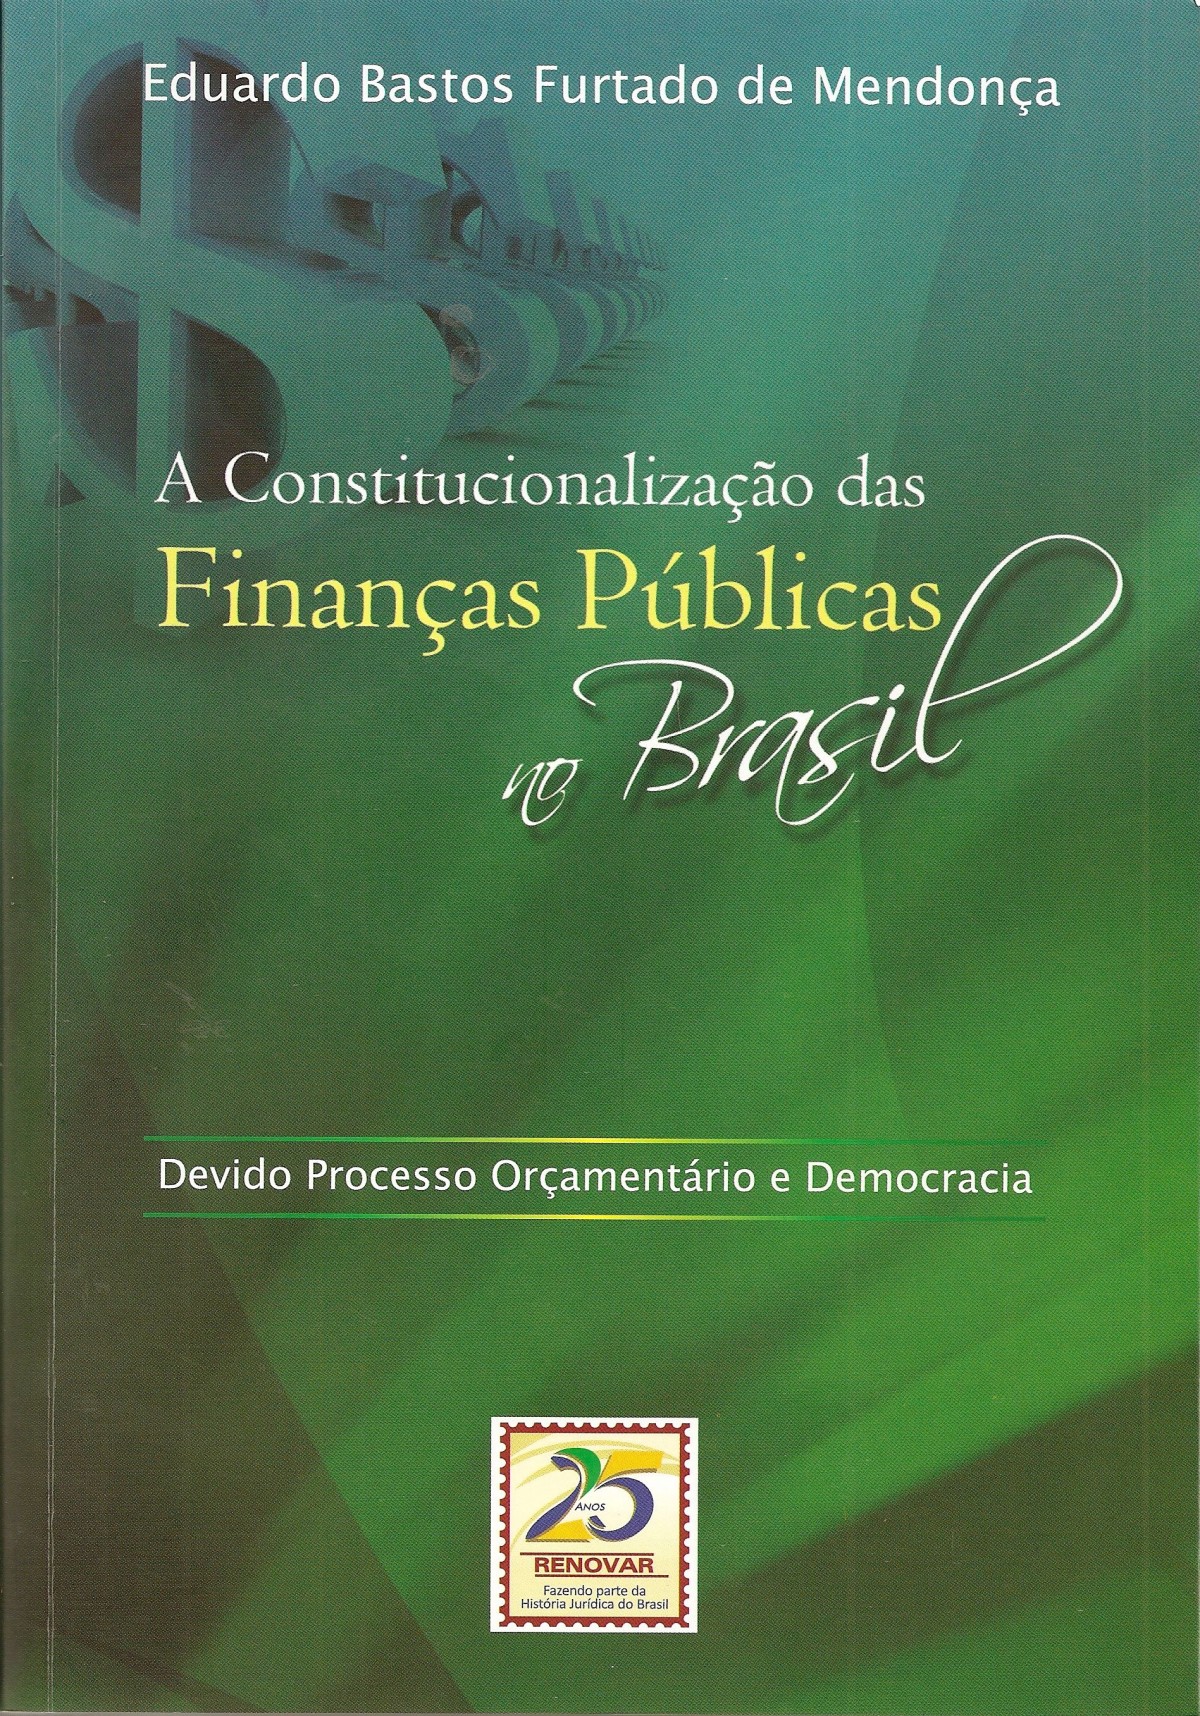 Foto 1 - A Constitucionalização das Finanças Públicas